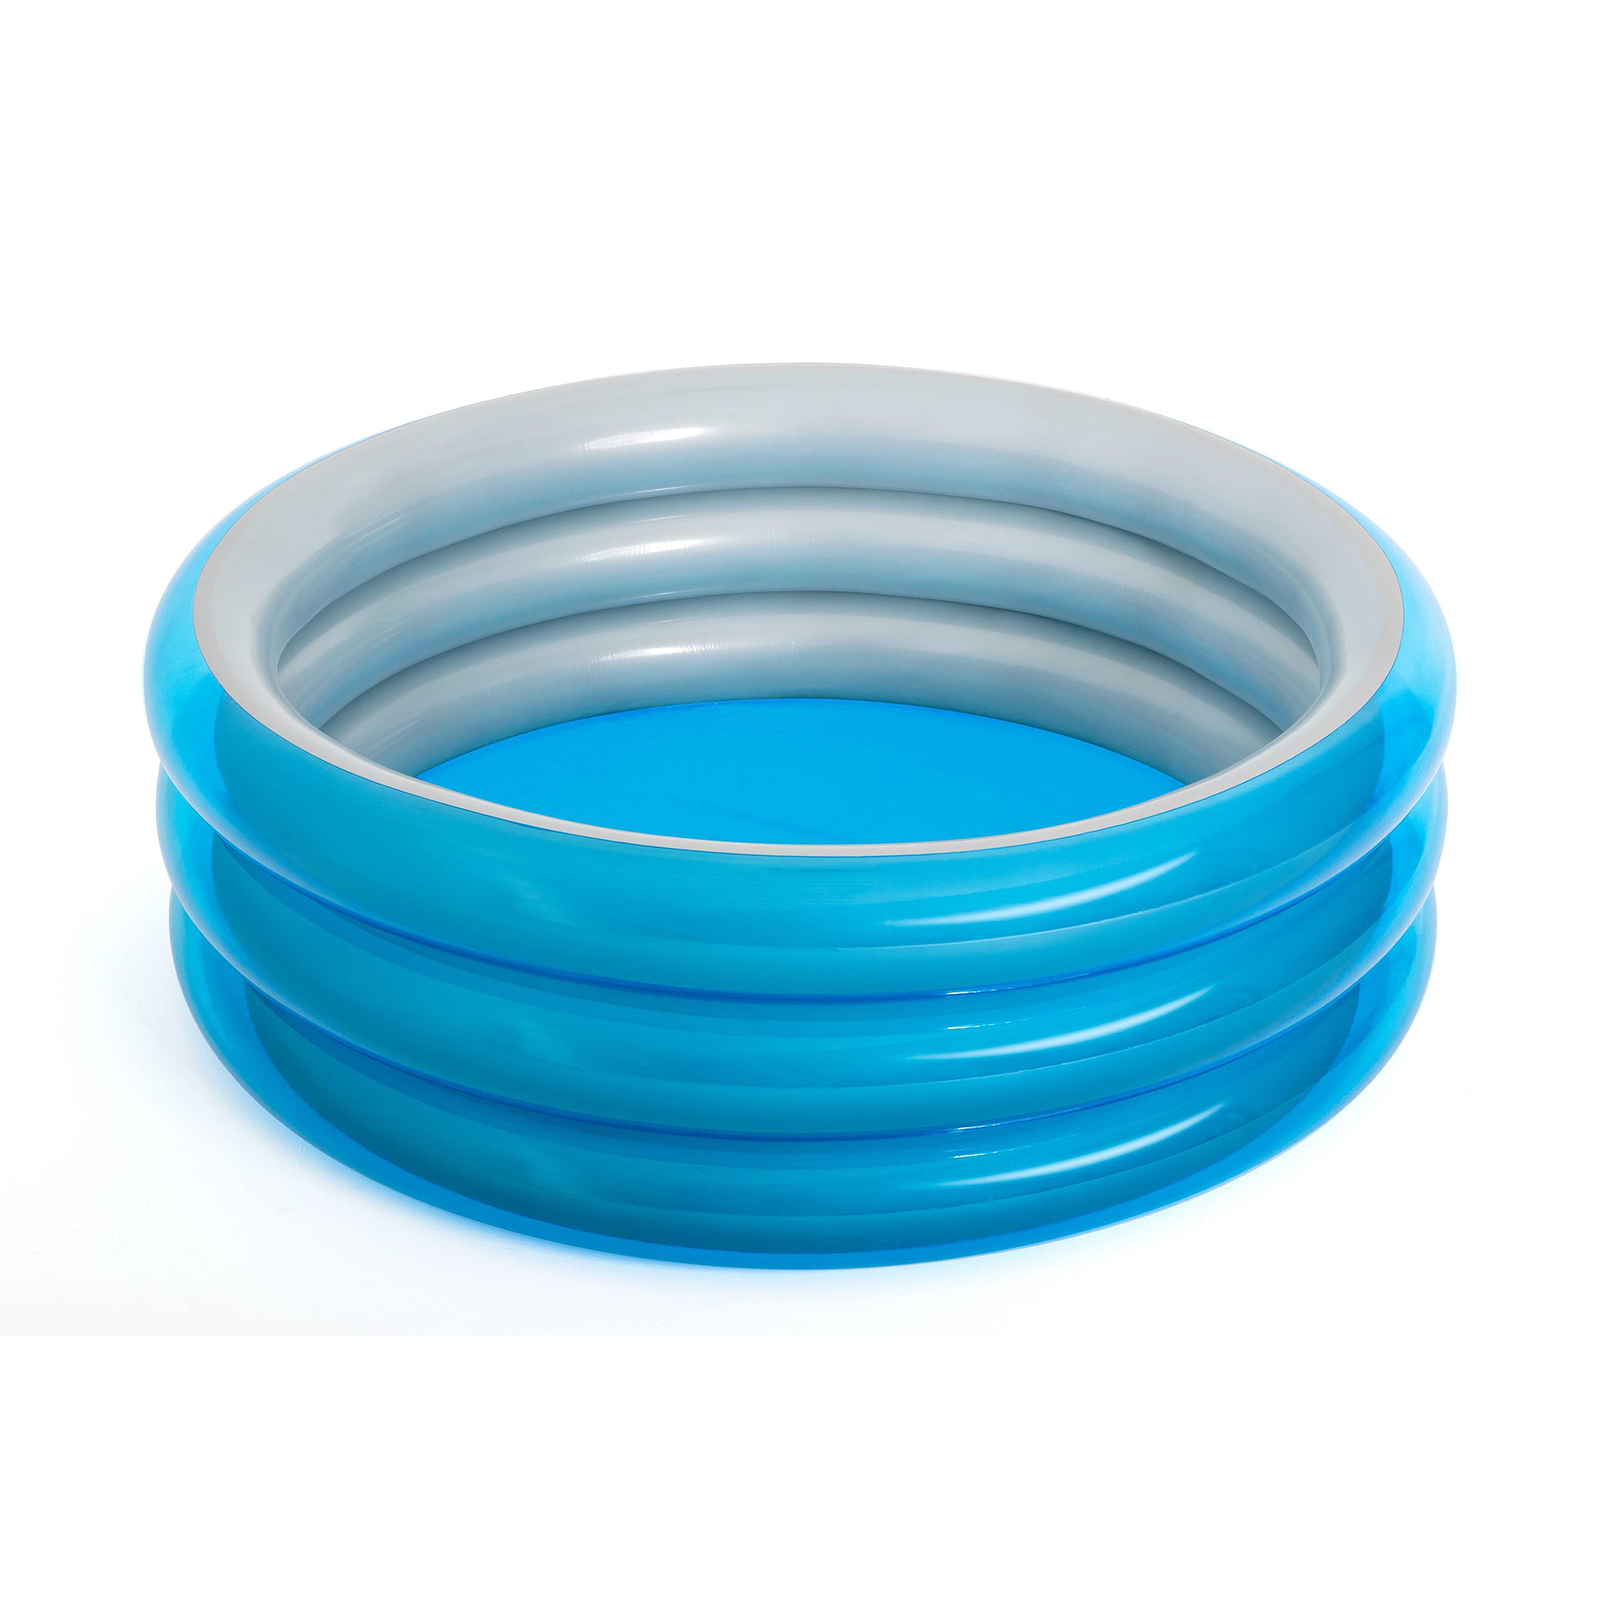 Piscina Hinchable Autoportante Infantil Bestway 170×53 Cm Diseño Big Metallic 3-ring Pool Edad - azul - 